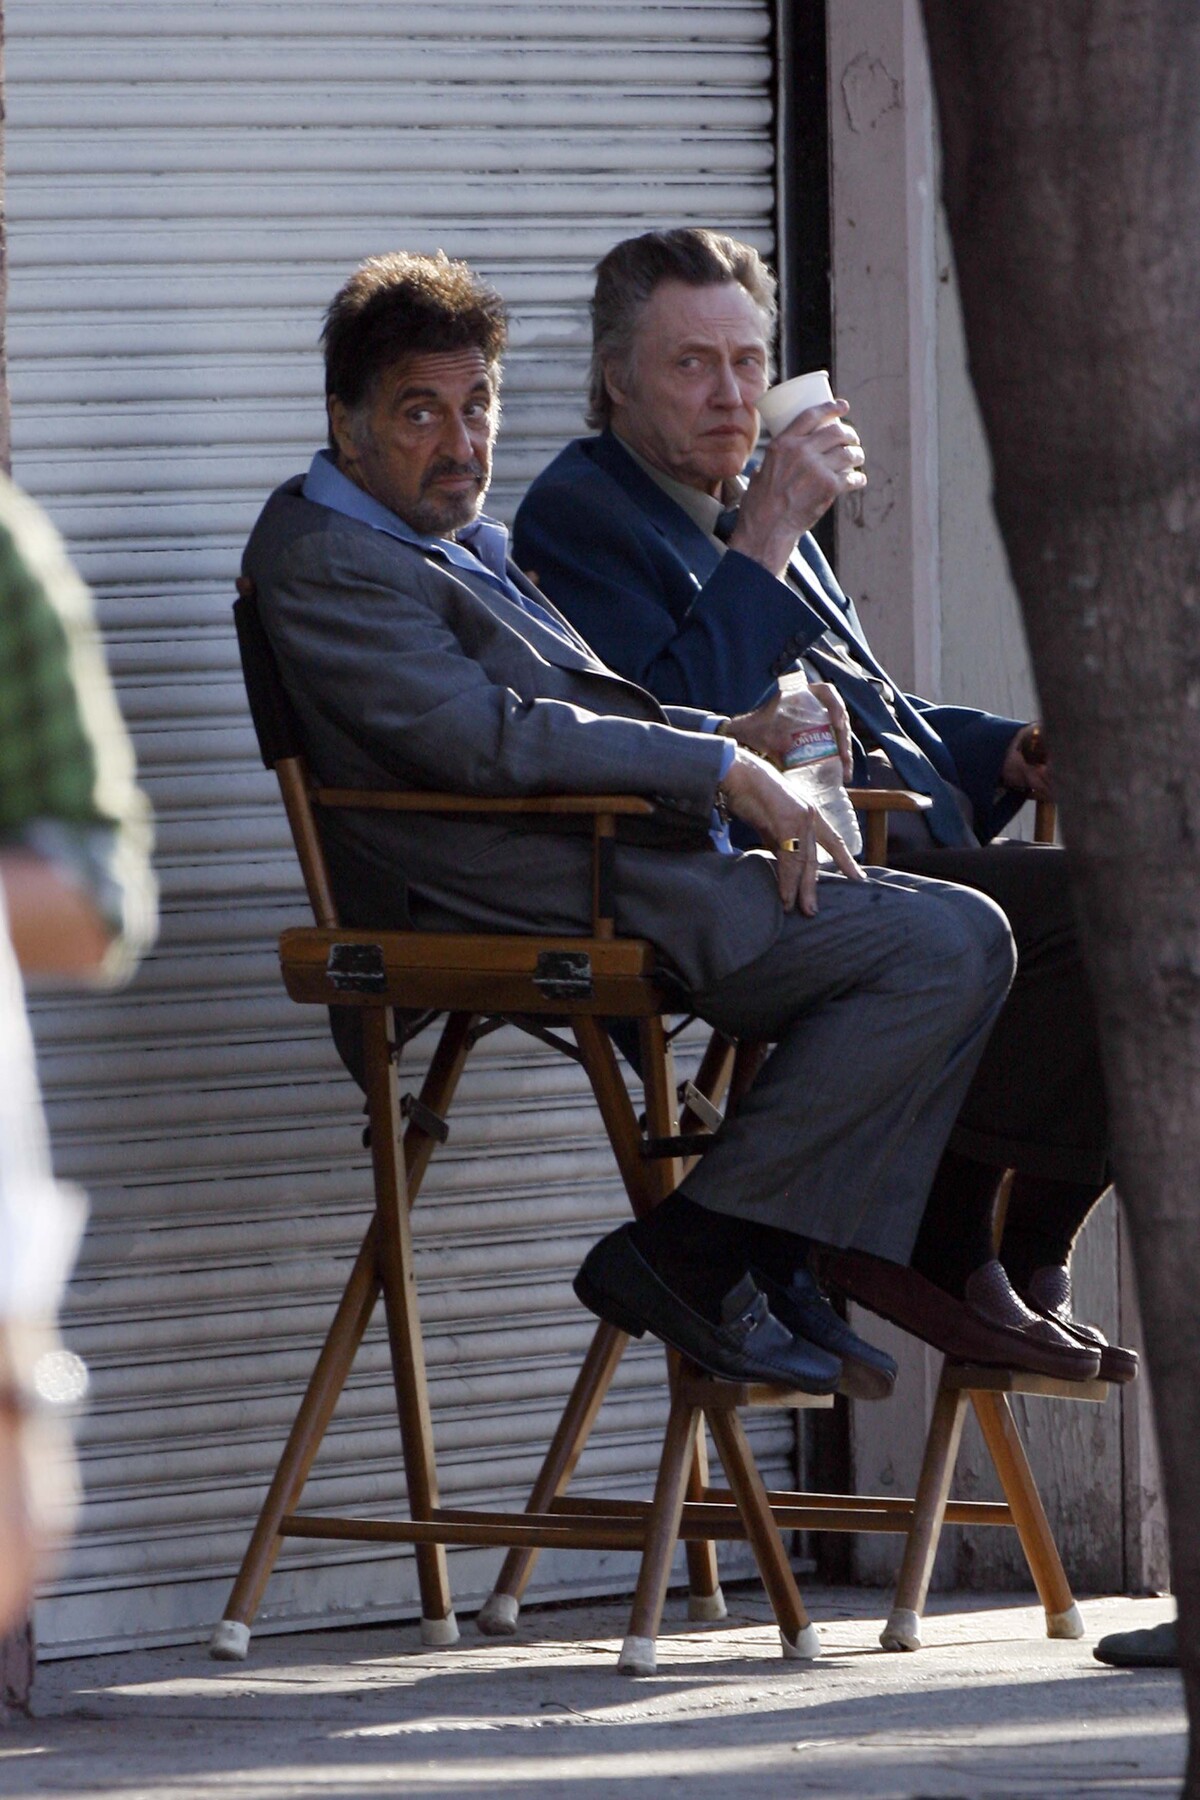 Аль Пачино и Кристофер Уокен на съемках фильма "Юмористы"